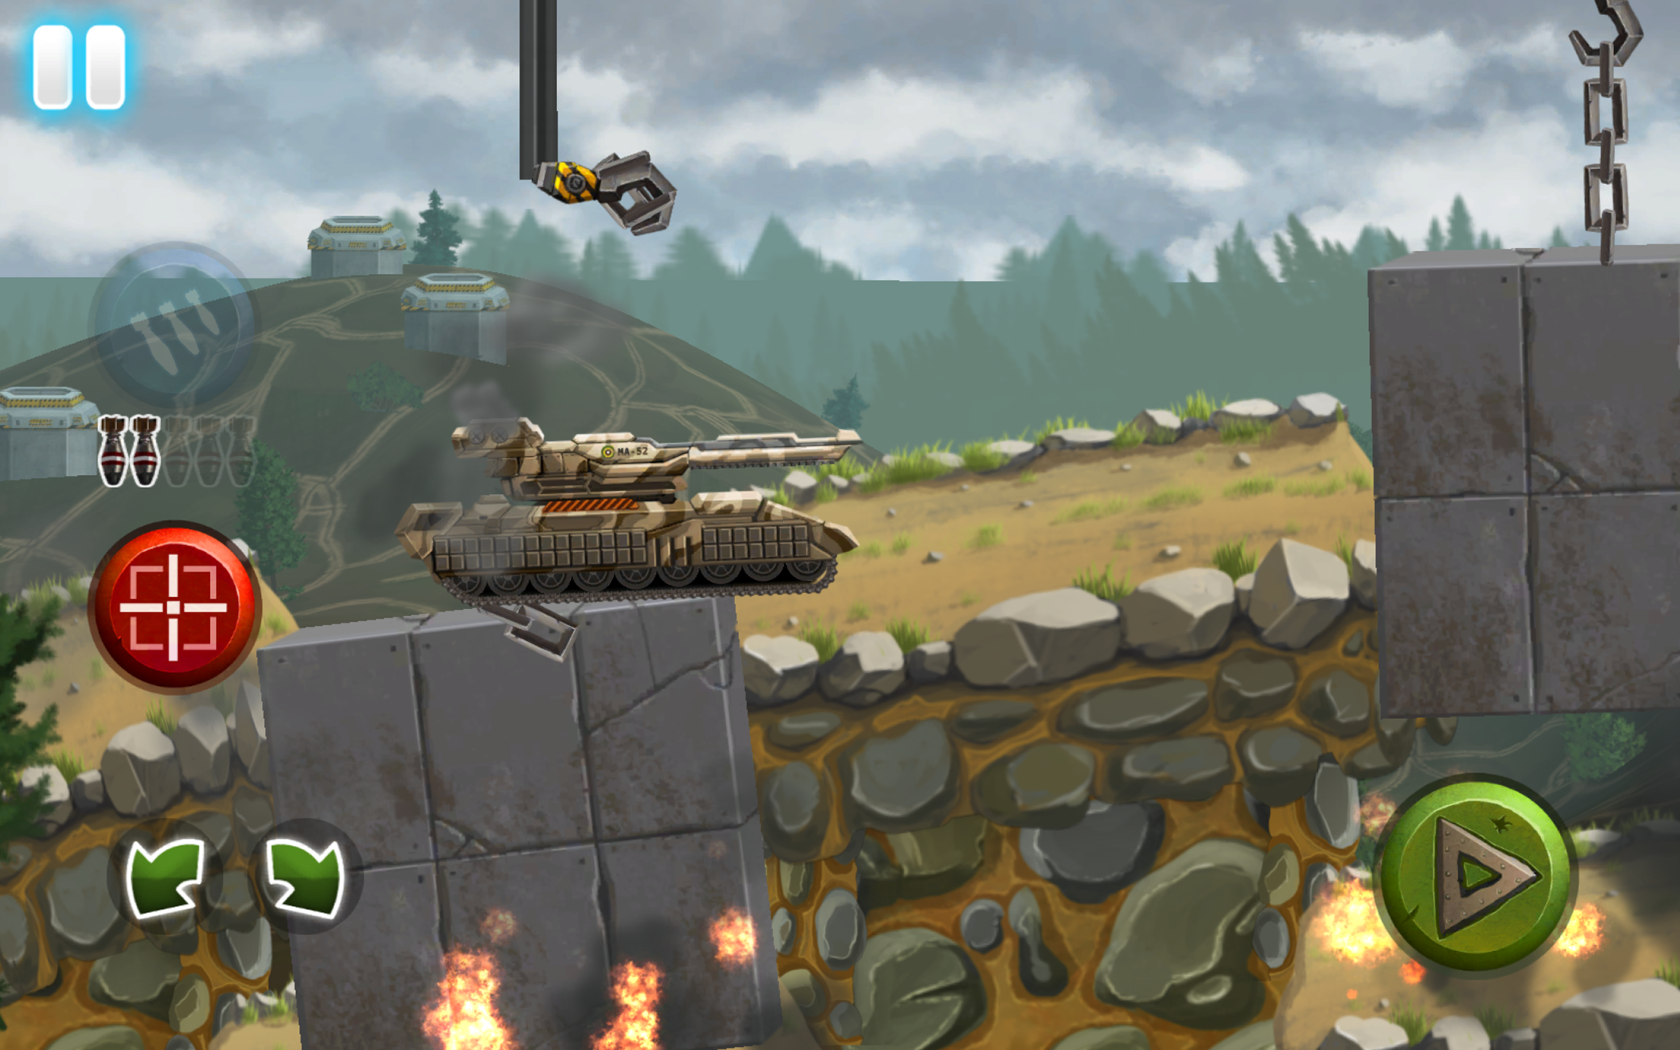 Tank Race: WW2 Shooting Gameのキャプチャ